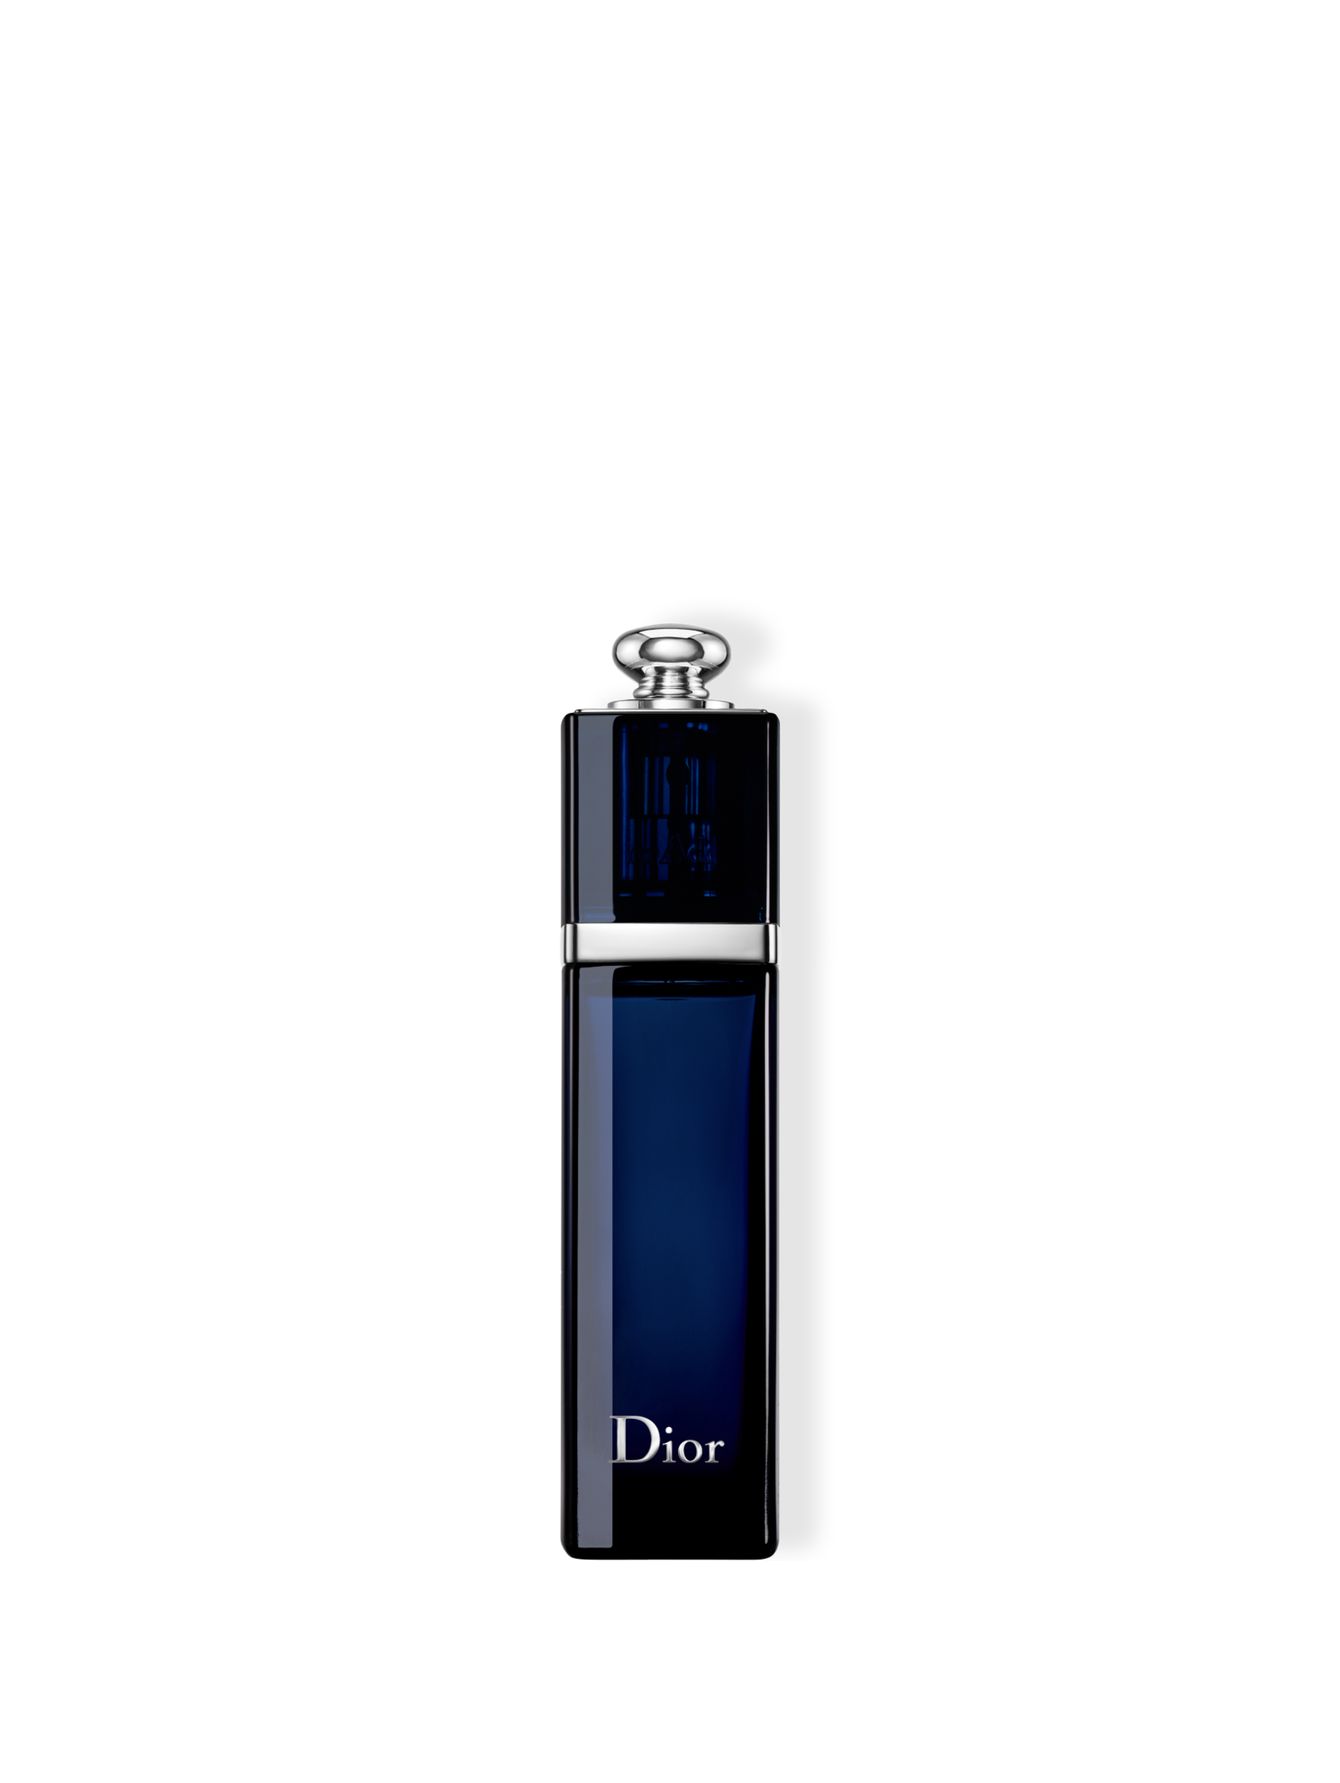 Dior Addict Парфюмерная вода  30 мл - Общий вид